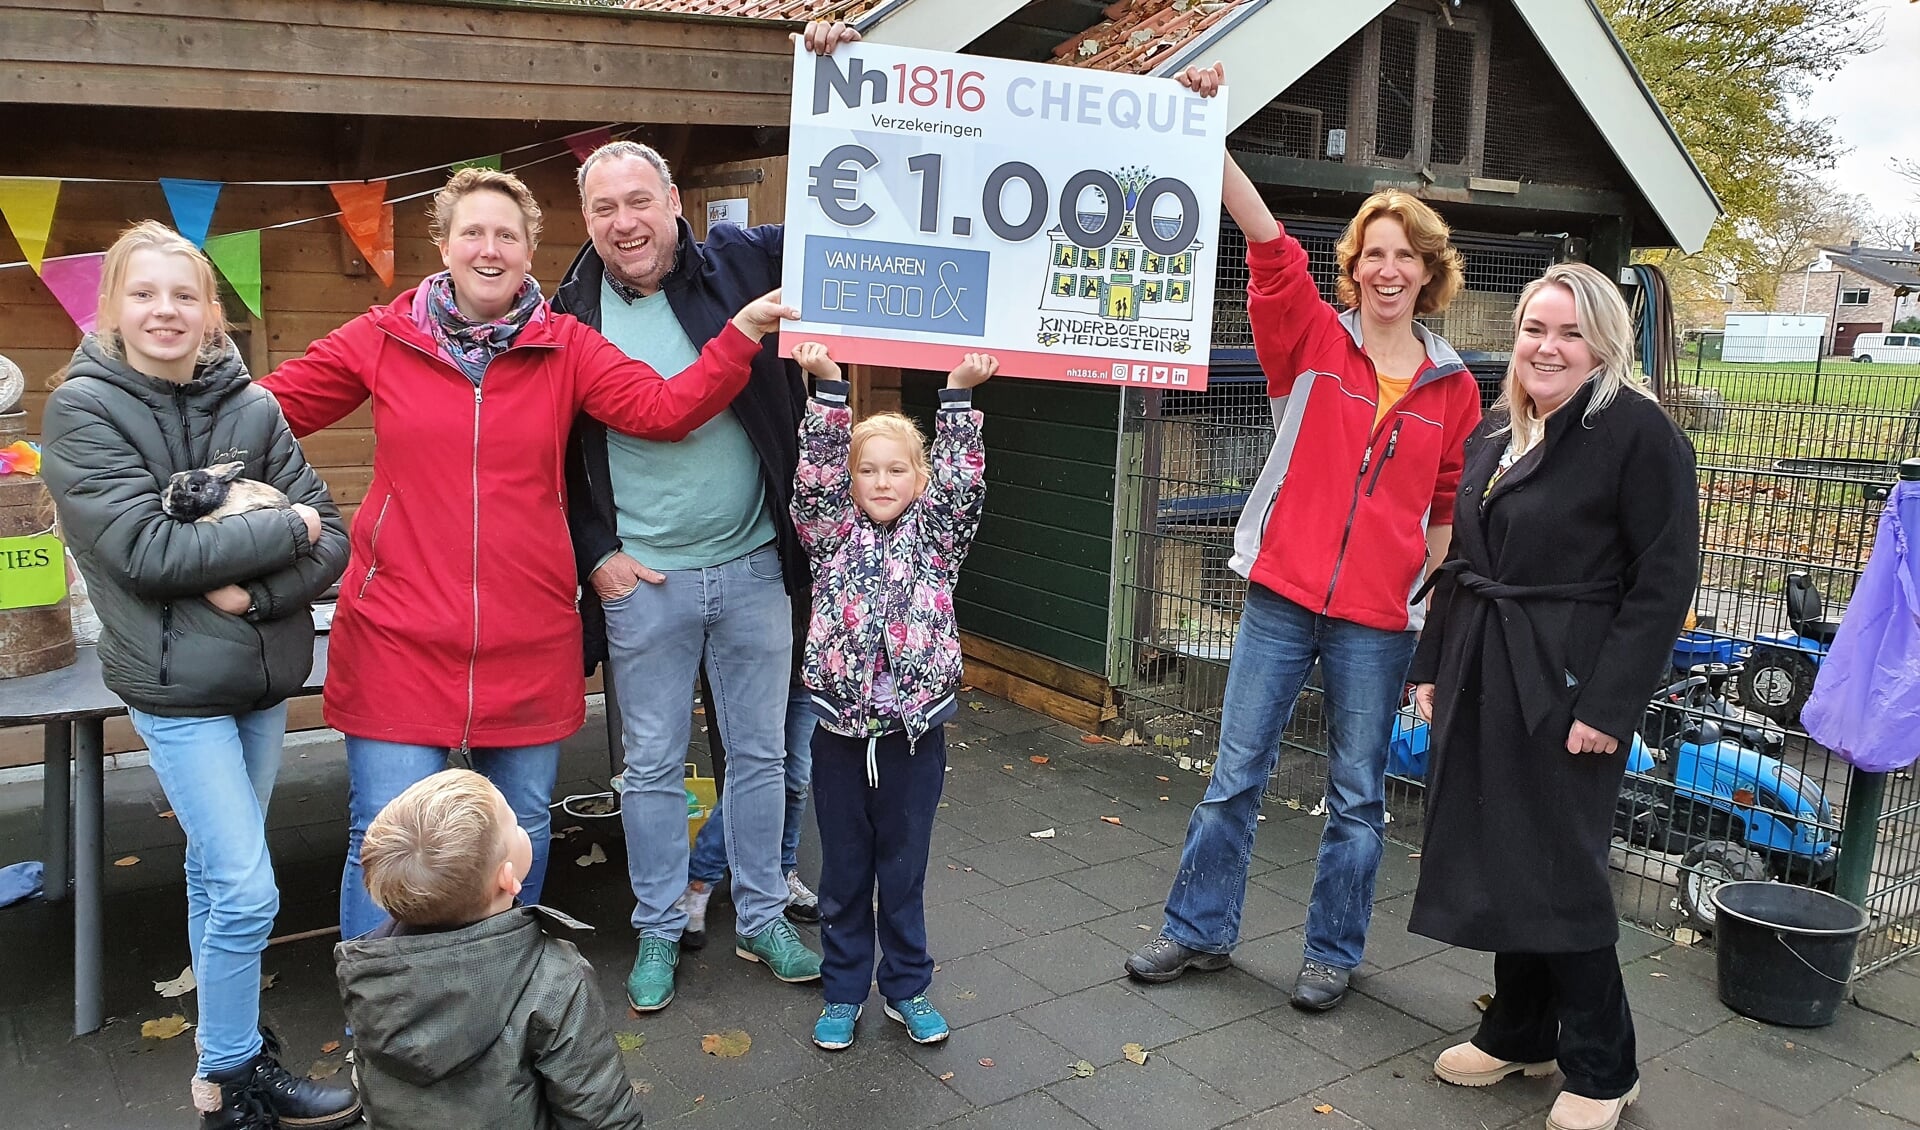 Laura van Haaren (uiterst rechts) overhandigt namens Van Haaren & De Roo Financieel Adviseurs in Renkum een cheque van € 1000,00.